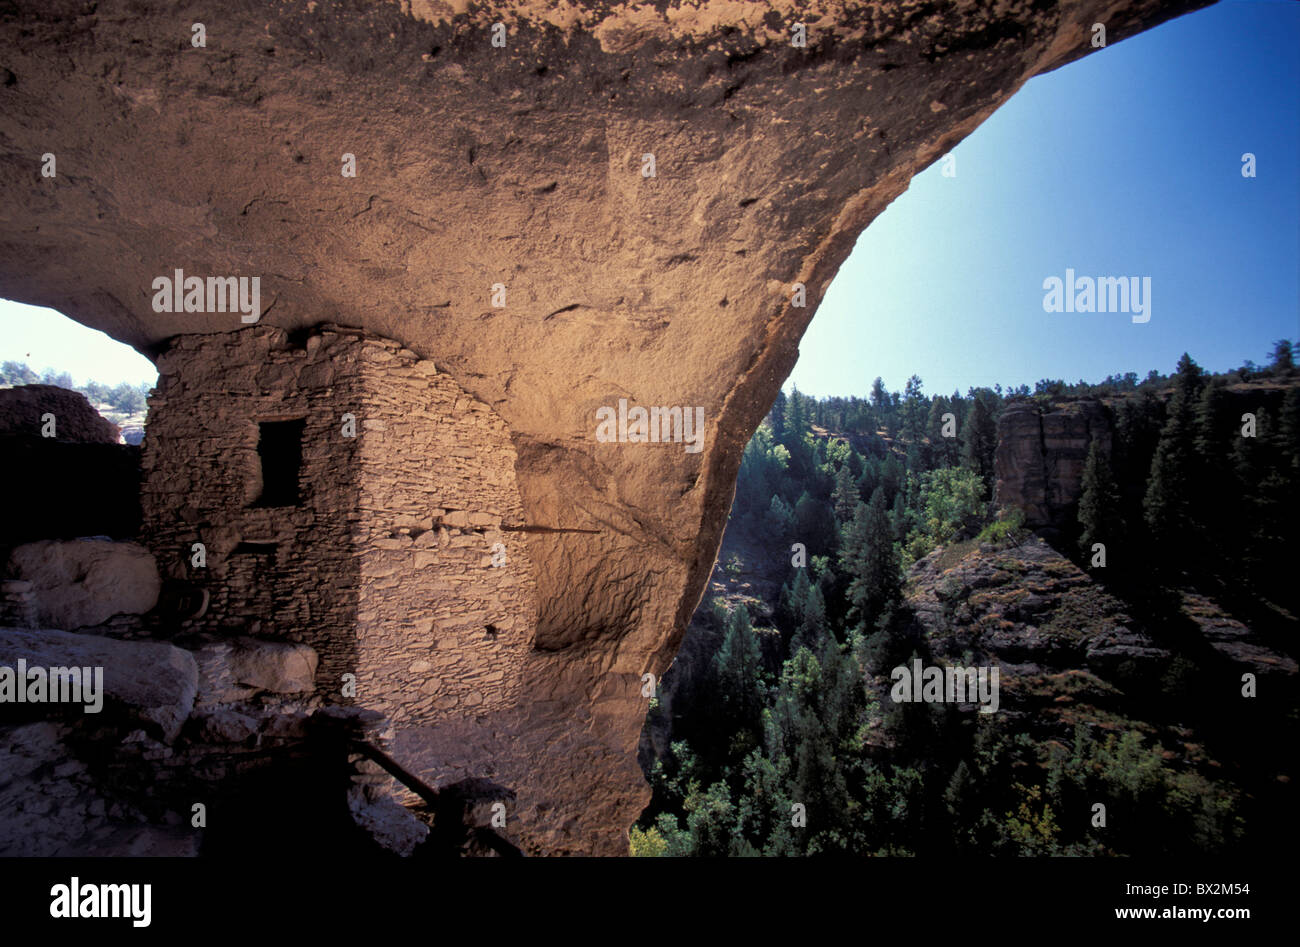 Gila Cliff dwellings National Monument Nouveau Mexique États-Unis Amérique du Nord Amérique du Nord Amérique natale bâtiment cave grotte Banque D'Images